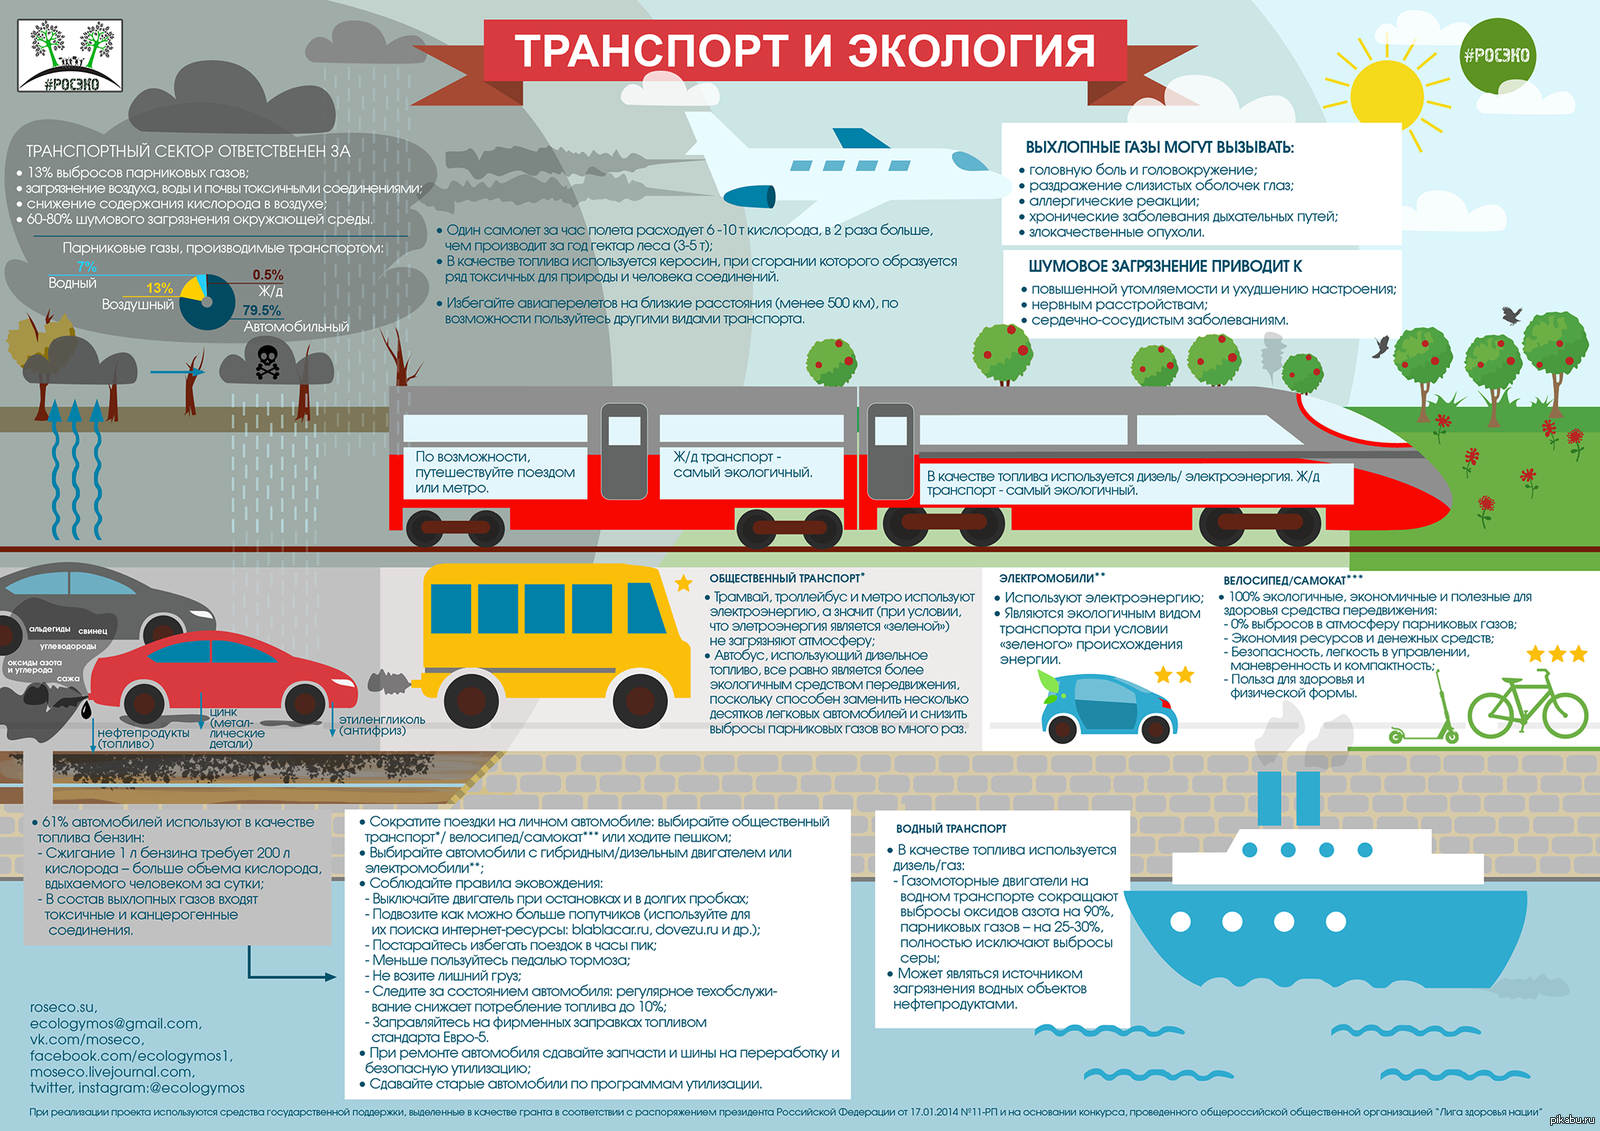 Исключение выбросов. Транспорт. Экологические виды транспорта. Транспорт и экология. Инфографика транспорт.